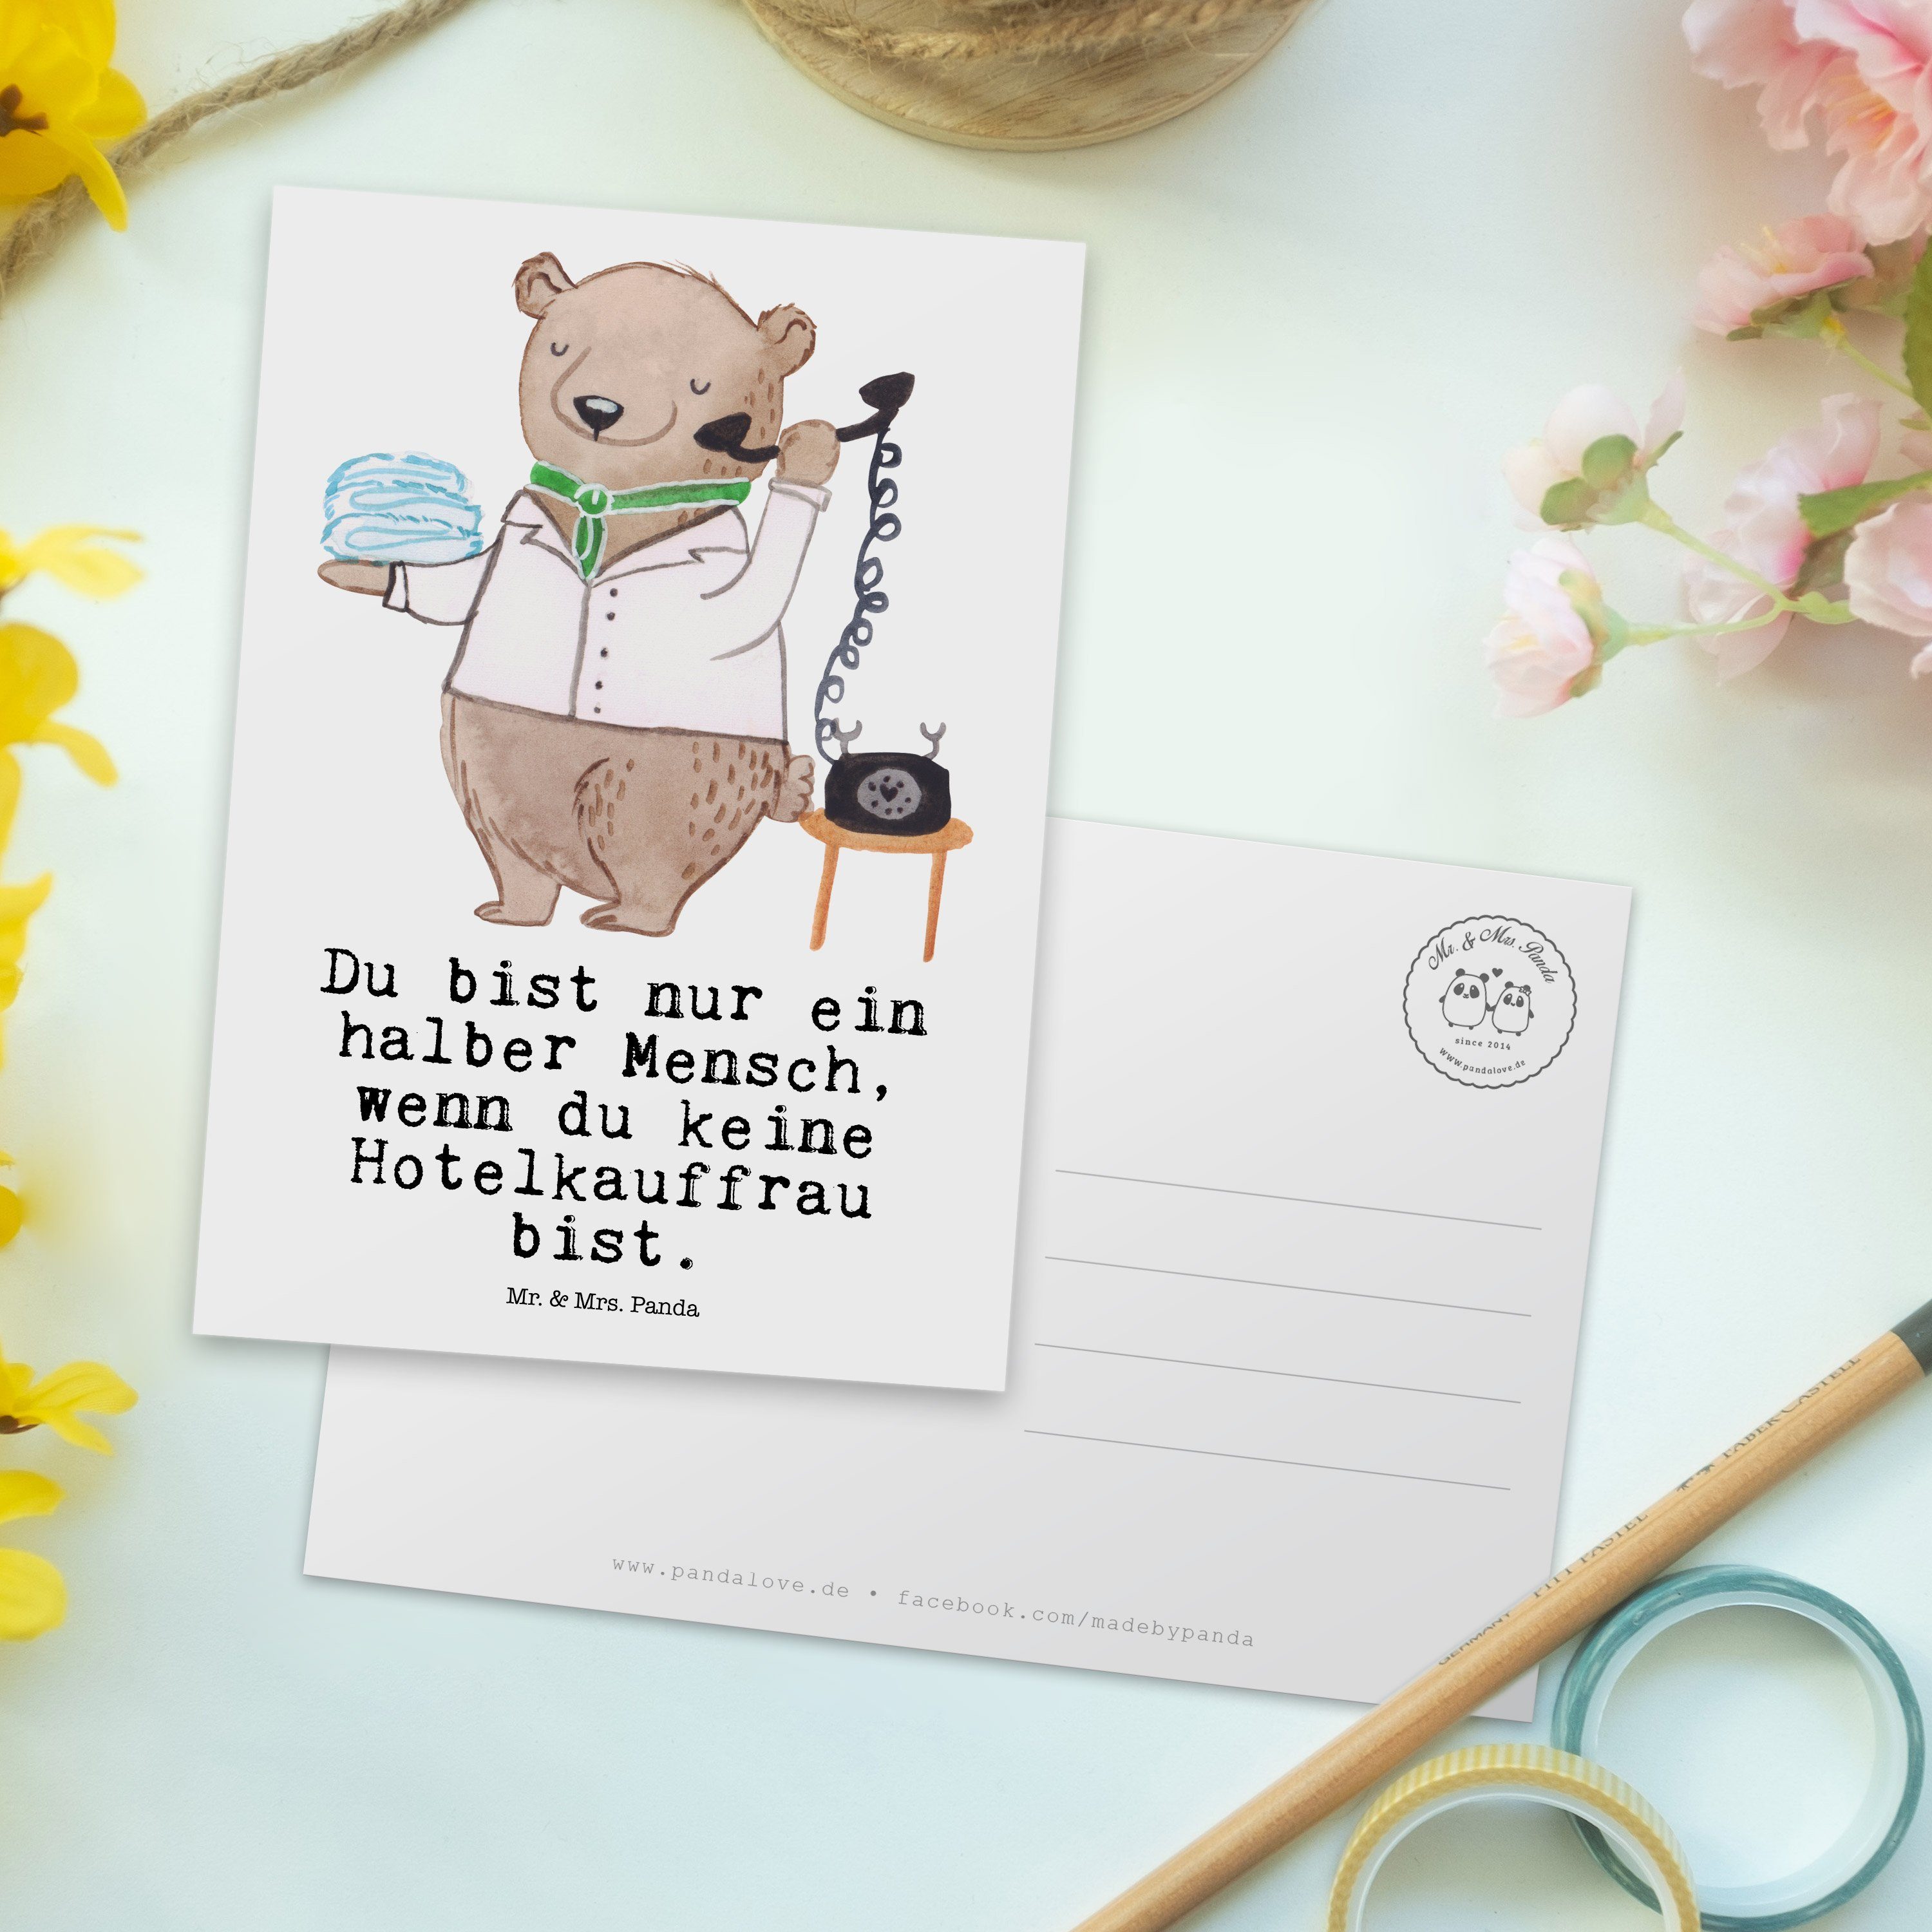 Mrs. Weiß & Mr. - Hotelkauffrau Panda Postkarte Herz mit Abschied, Geburtstagskarte Geschenk, -